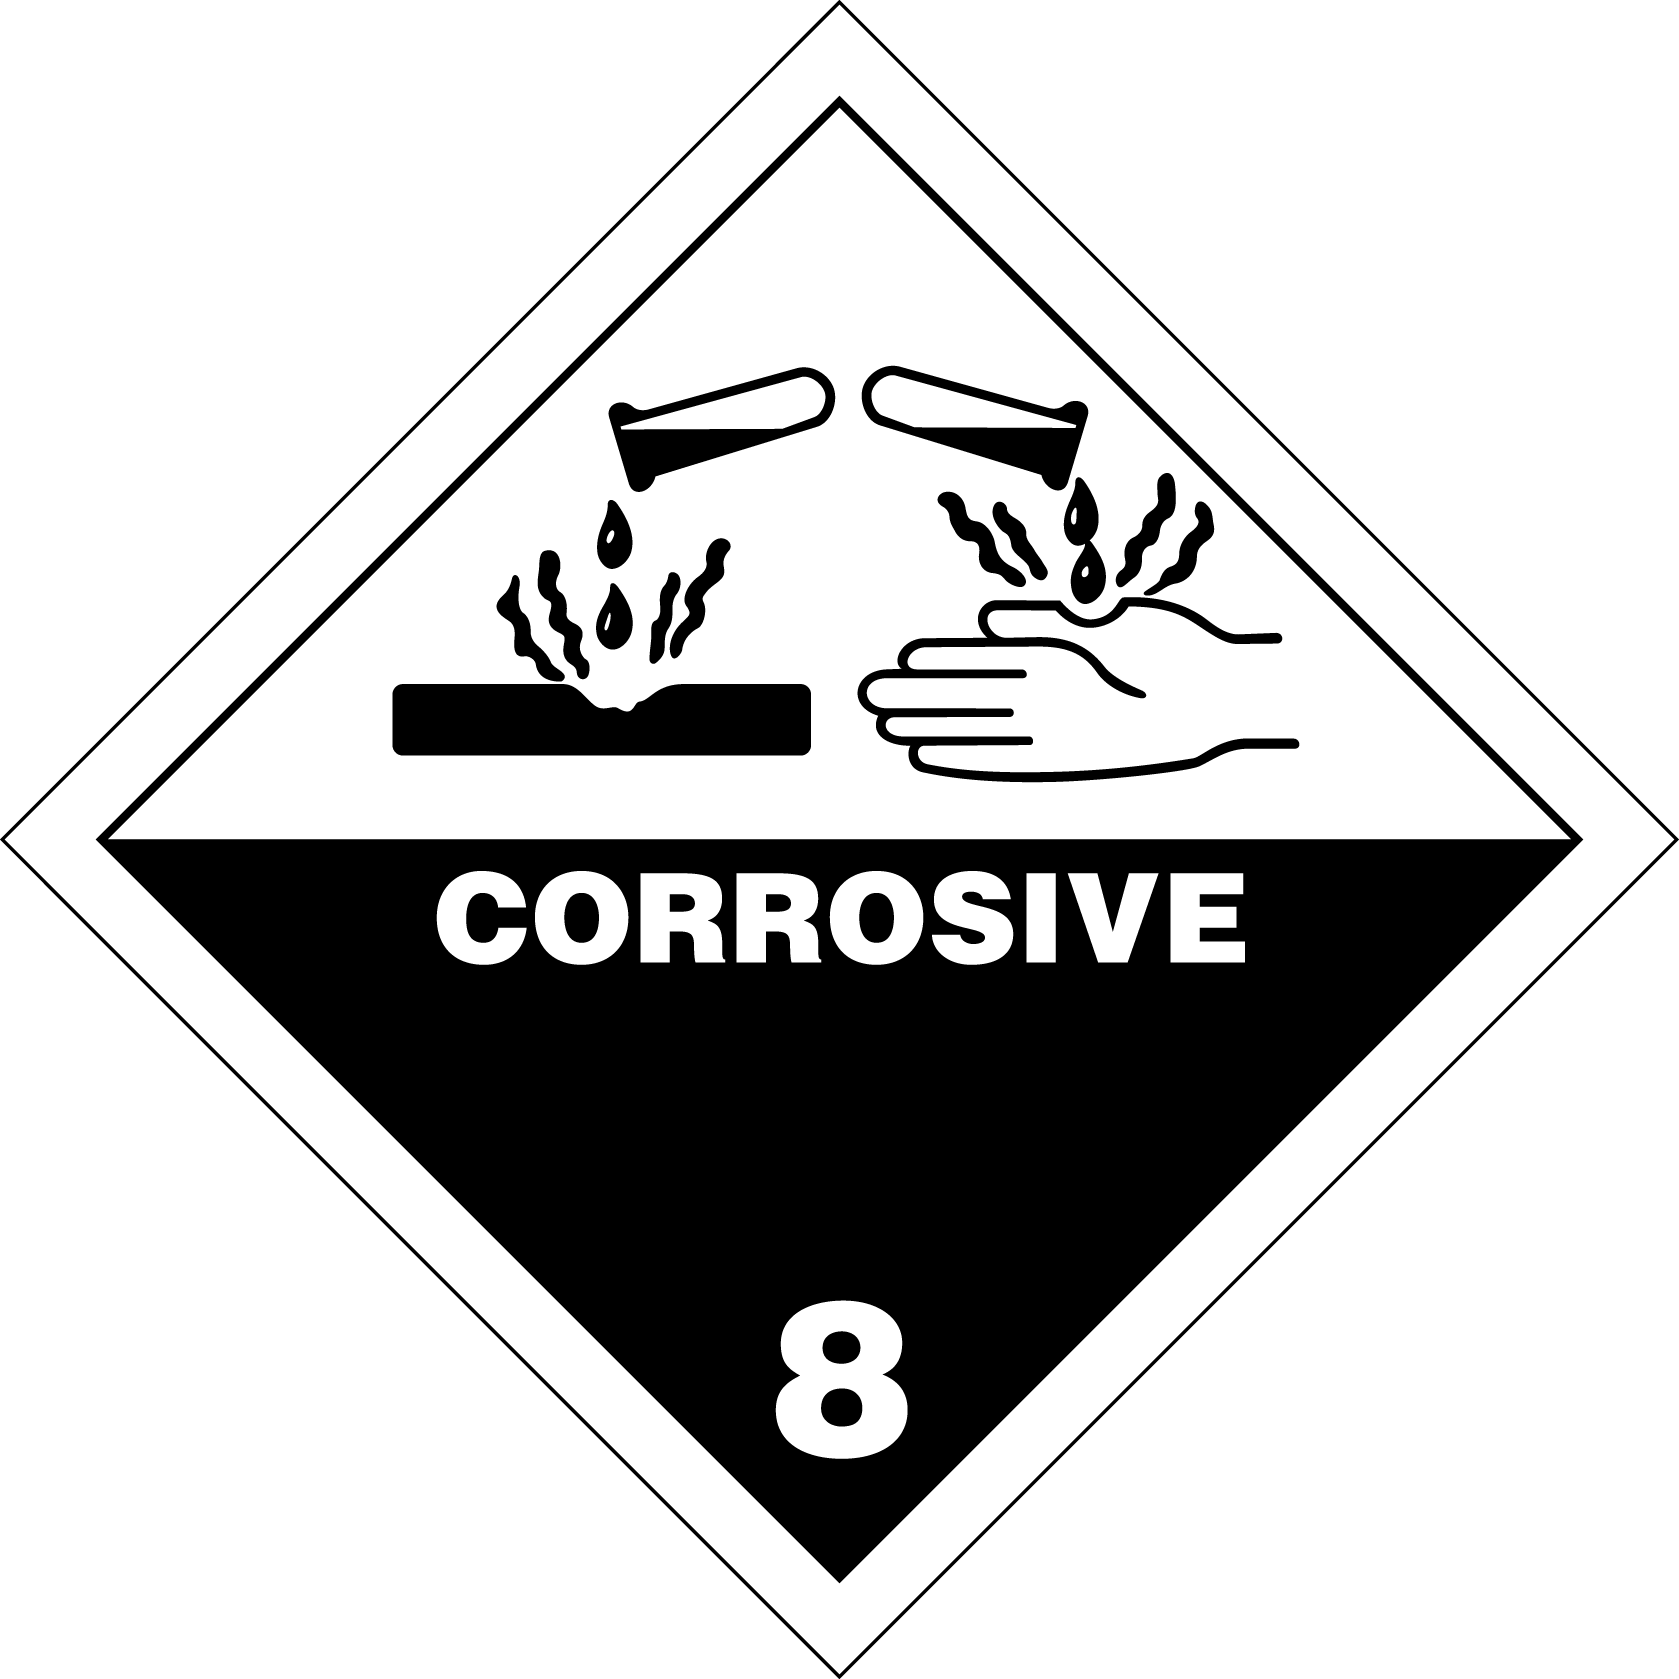 Знаки опасности на тару. 8 Класс опасности груза. Класс 8 коррозионные вещества. Знак коррозионные вещества. Опасные знаки.